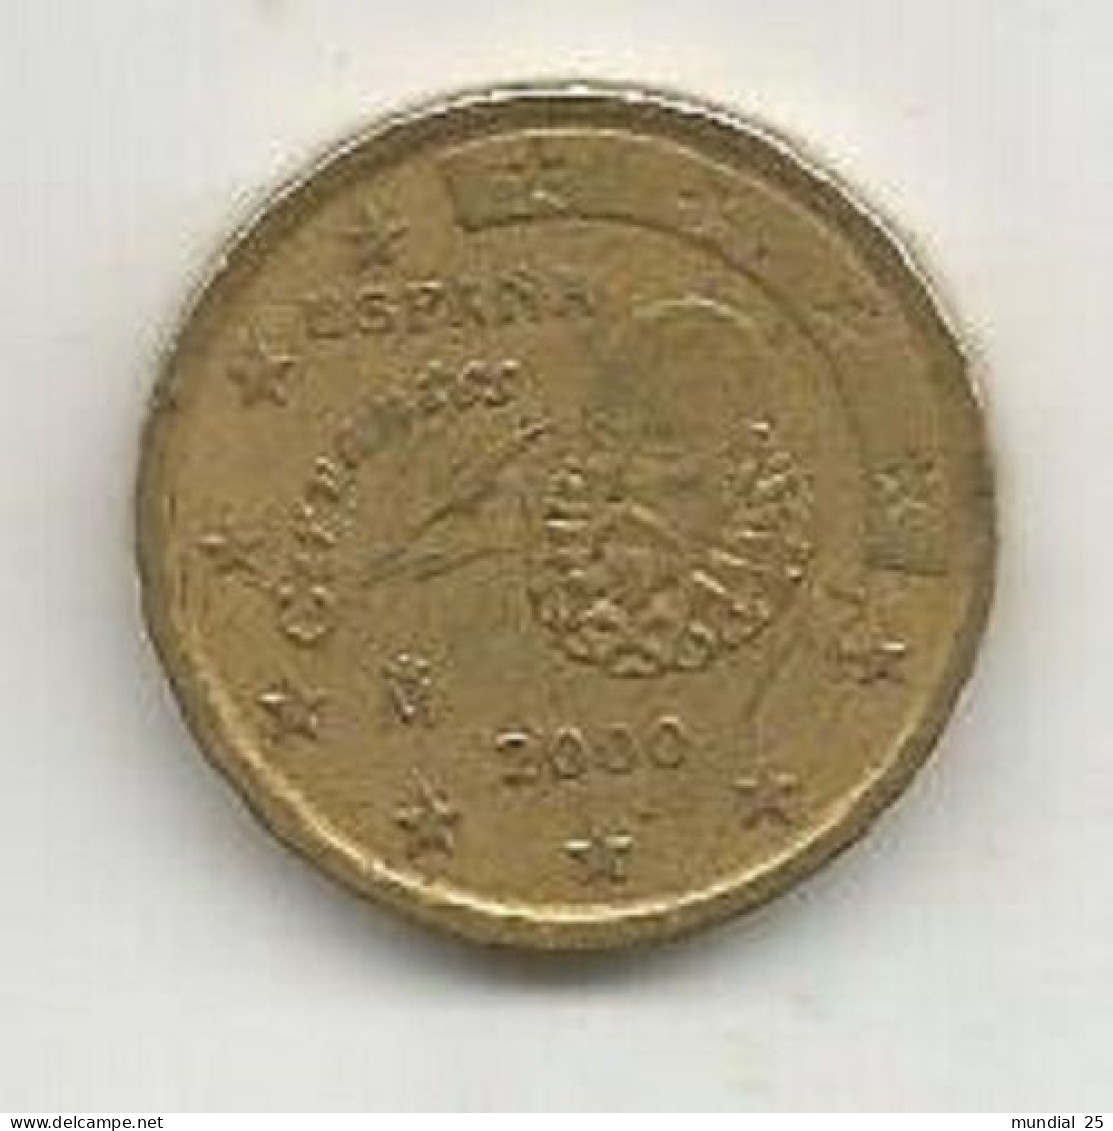 SPAIN 10 EURO CENT 2000 M - España